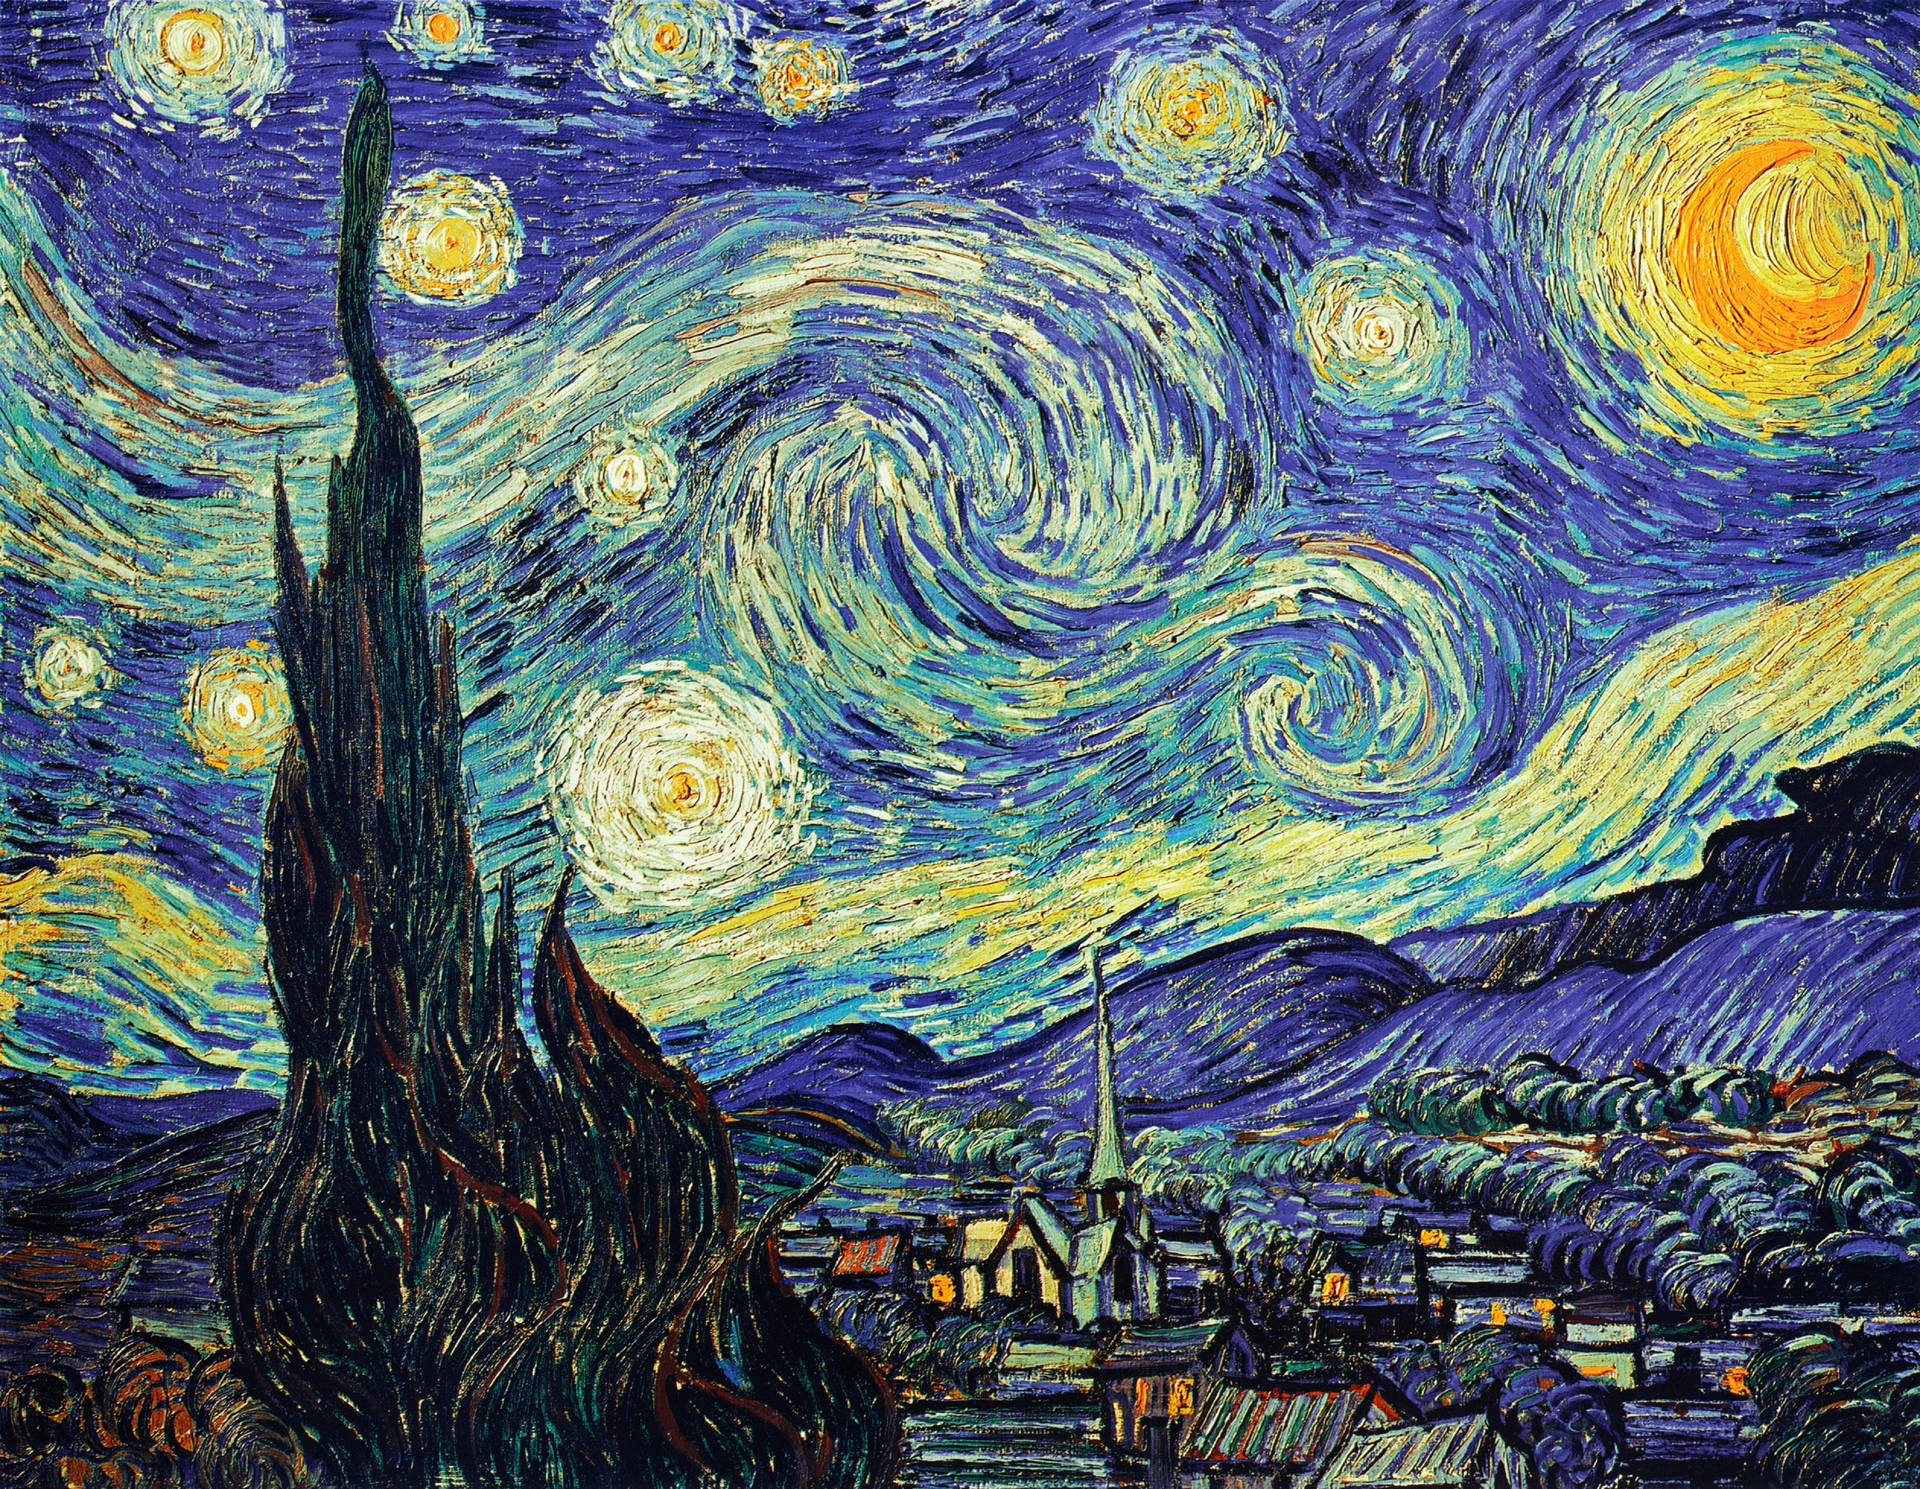 Tải về ngay bộ sưu tập hình nền máy tính của Van Gogh để trải nghiệm không gian làm việc trực quan và sáng tạo hơn. Với những bức tranh đẹp và nổi tiếng trong bộ sưu tập, bạn sẽ luôn có những ý tưởng tuyệt vời cho công việc của mình. Khám phá bộ sưu tập và tải xuống những hình nền đầy nghệ thuật của Van Gogh ngay hôm nay!